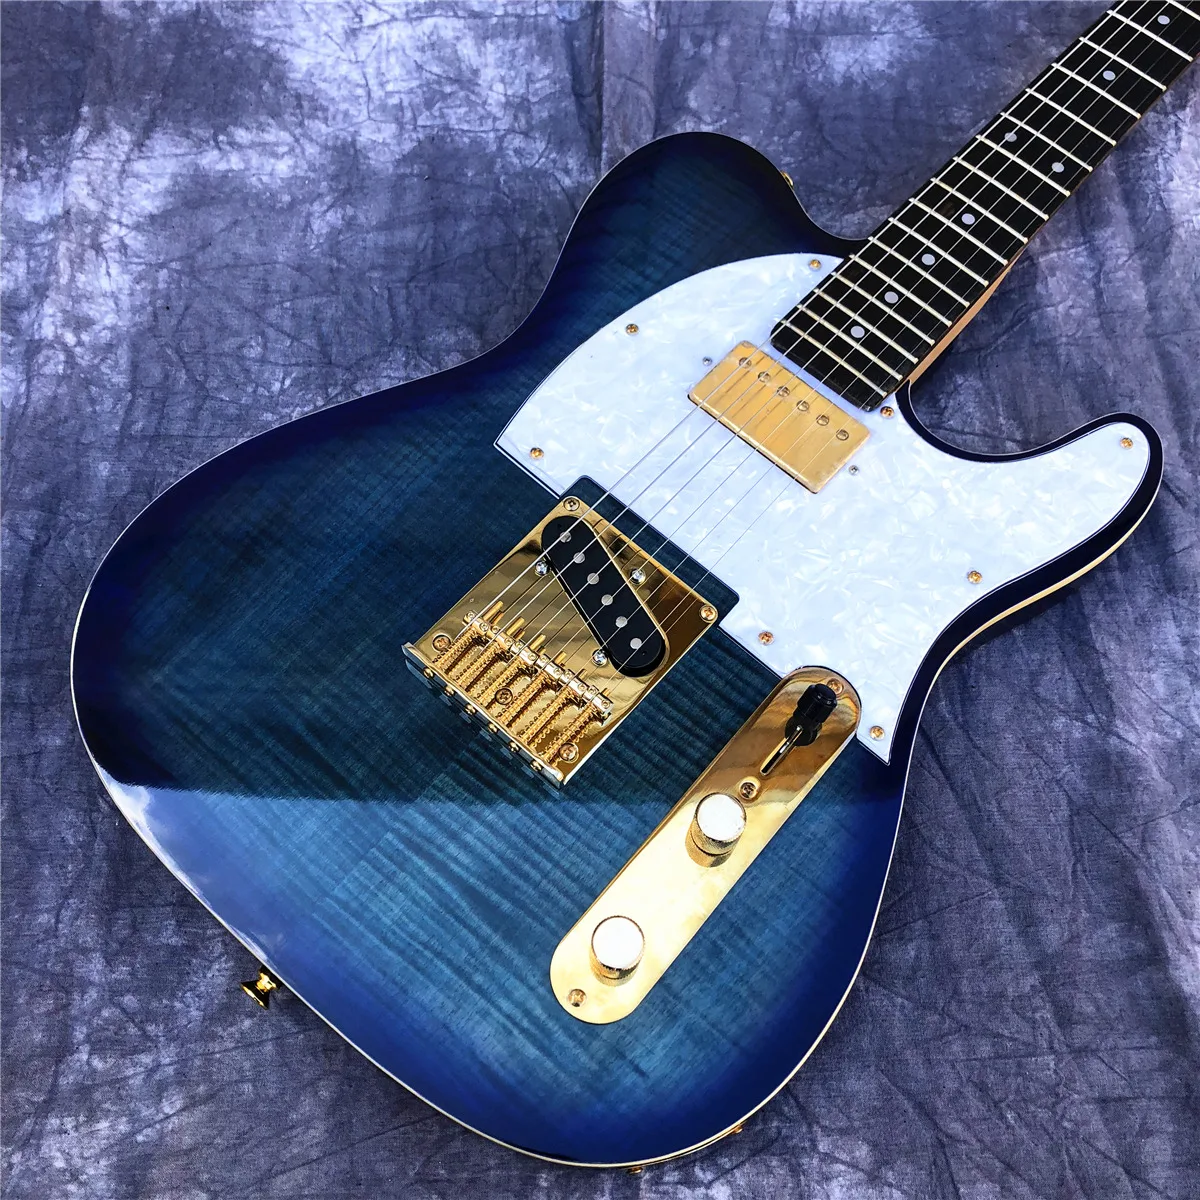  Заводская электрогитара с кленом синего пламени TL, высококачественная золотая фурнитура 6-струнная гитара из массива дерева